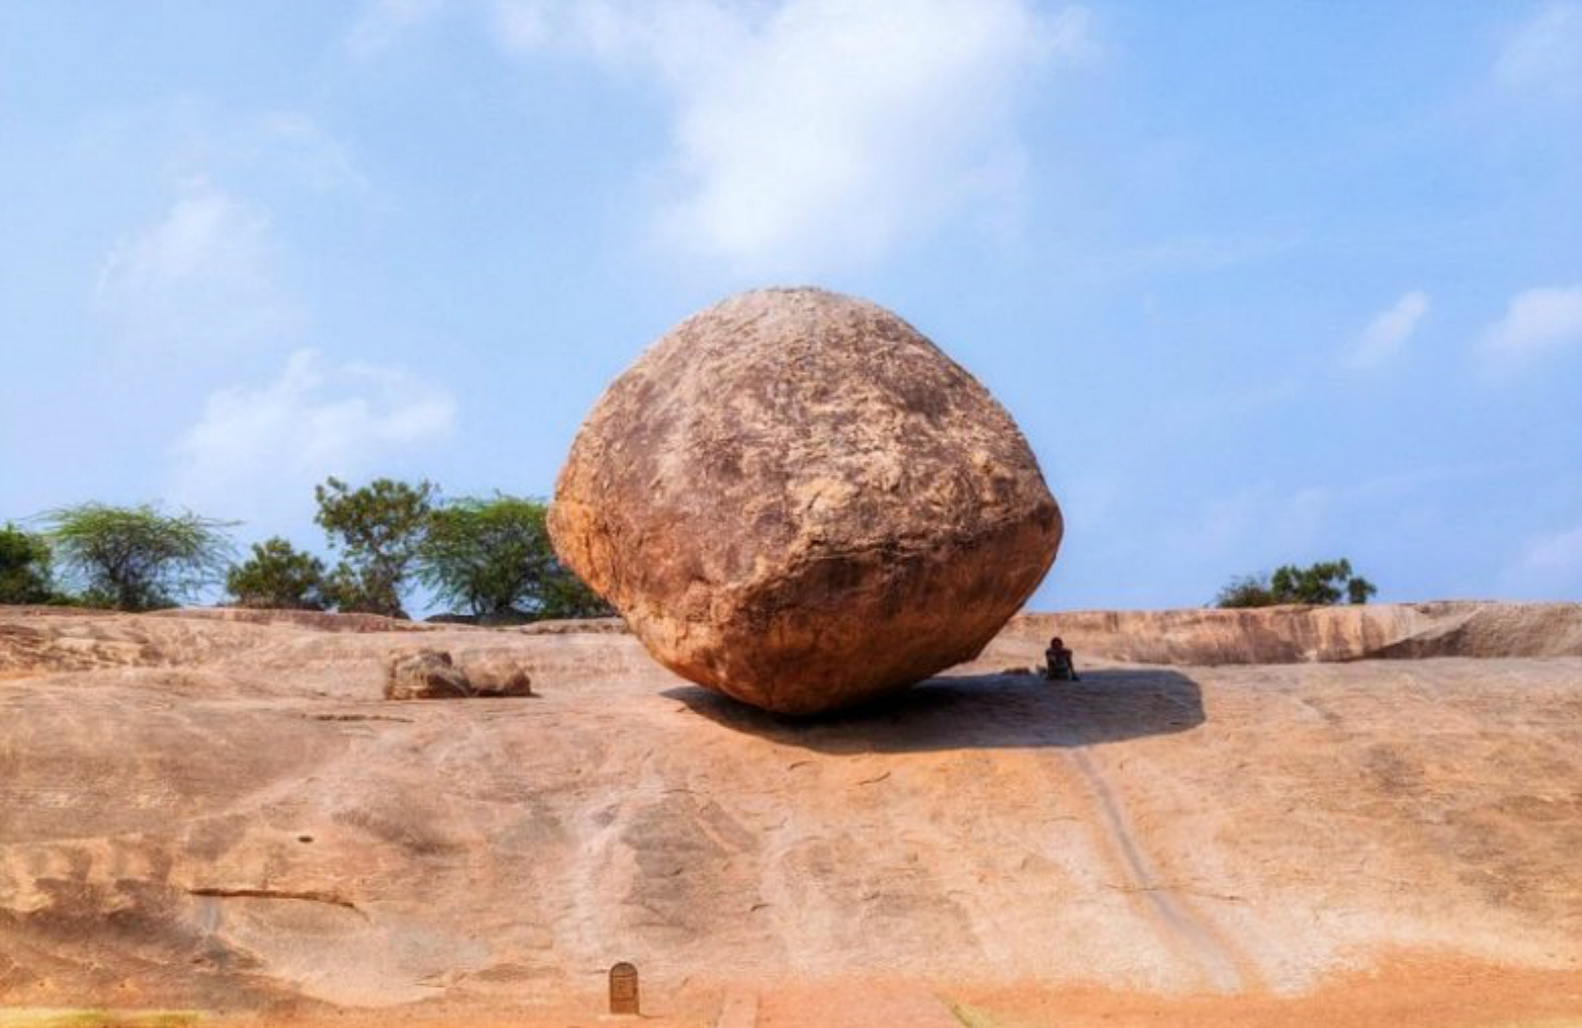 Камень находящийся на воздухе. Камень Кришны в Махабалипурам. Масляный шар — камень Кришны. Индия. Махабалипурам валун. Масляный шар Кришны в Махабалипураме Индия.